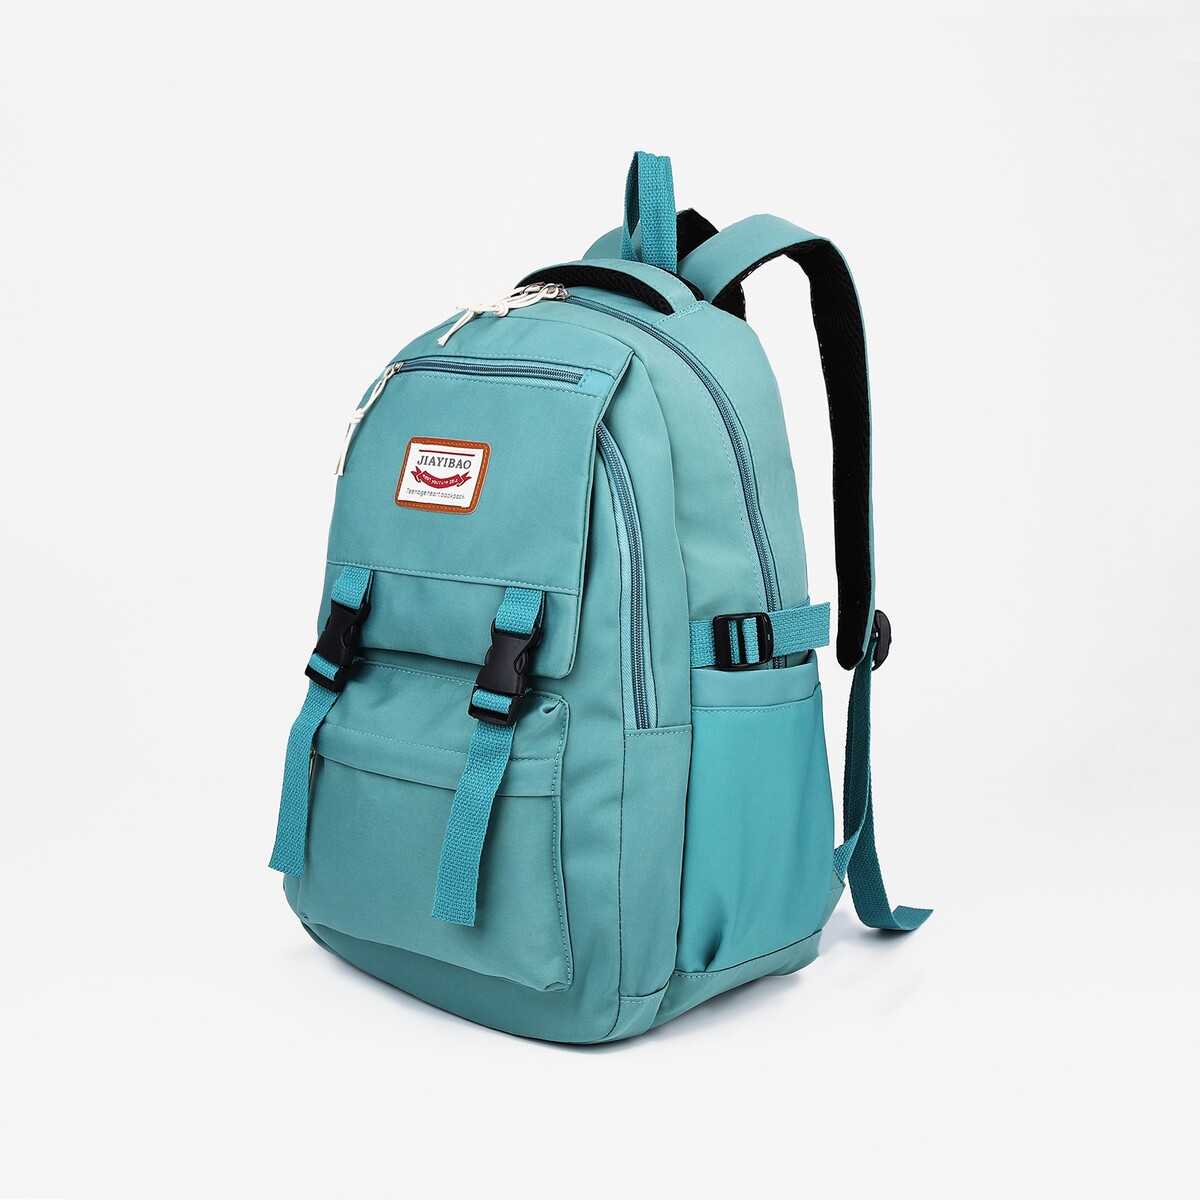 Рюкзак на молнии, 4 наружных кармана, цвет бирюзовый рюкзак школьный из текстиля на молнии 3 кармана бирюзовый